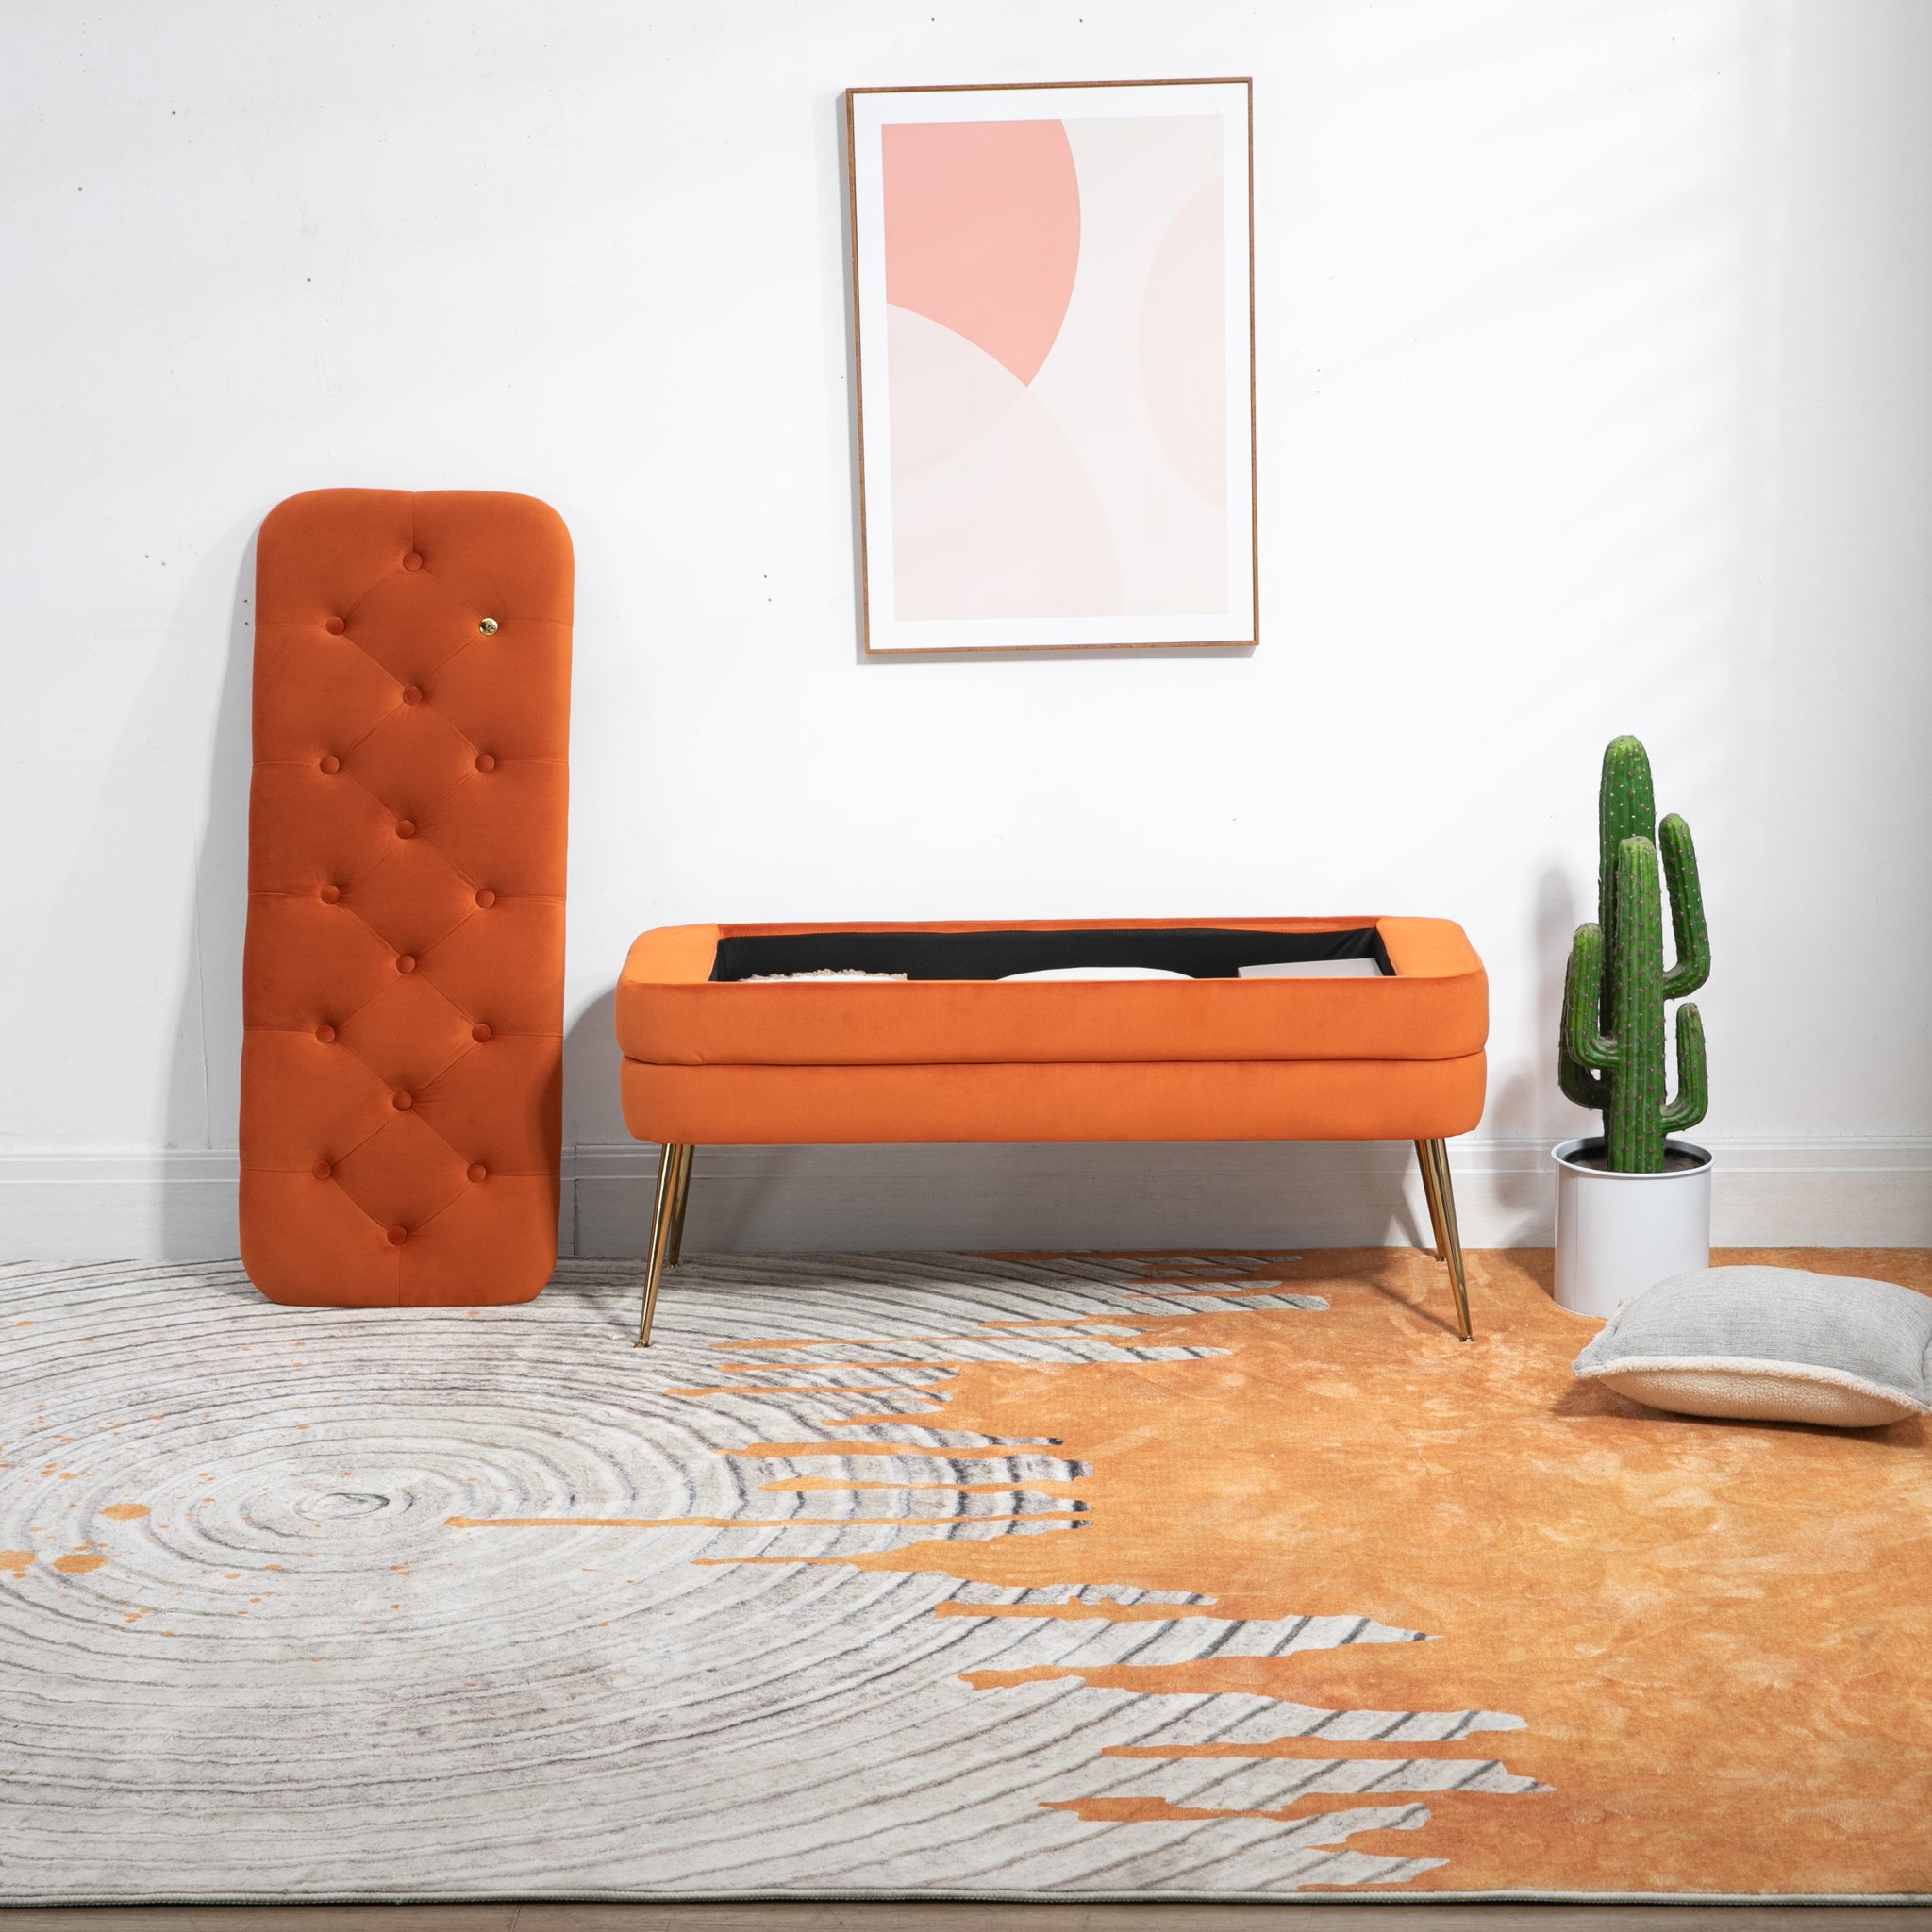 COOLMORE Storage Ottoman,Bedroom End Bench,Upholstered orange-velvet